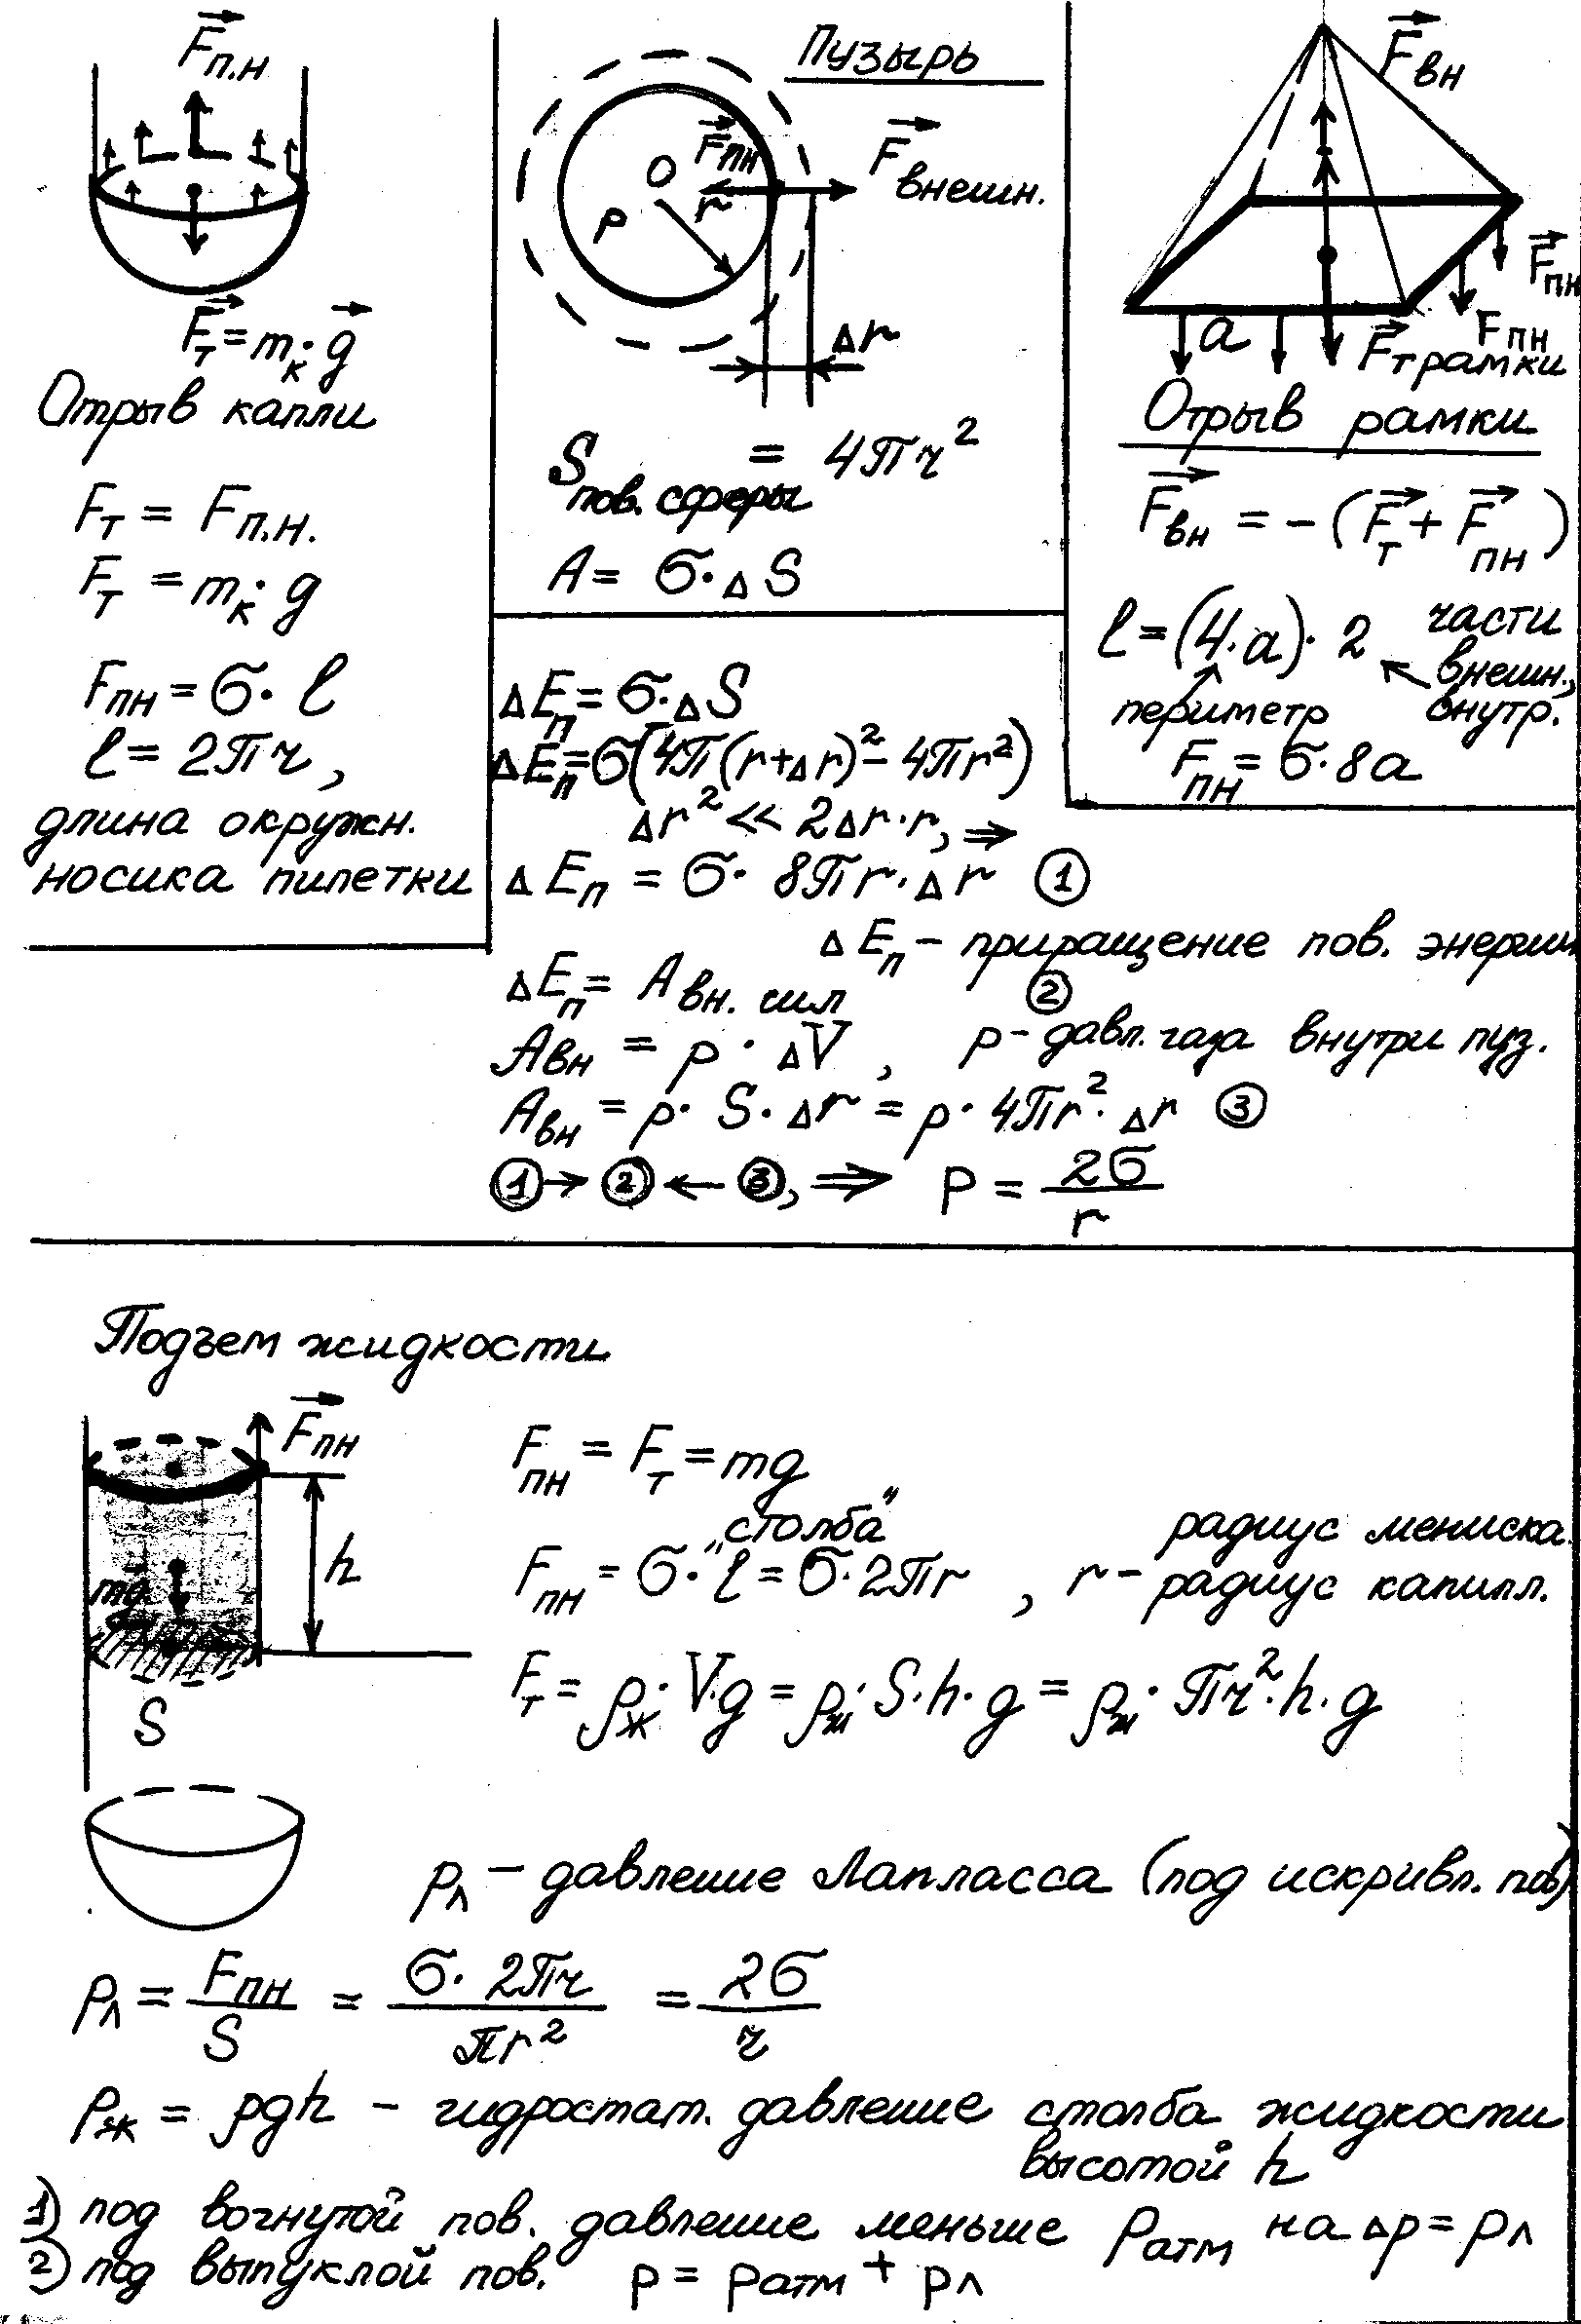 Различные формы проверки домашнего задания по физике с использованием опорного конспекта